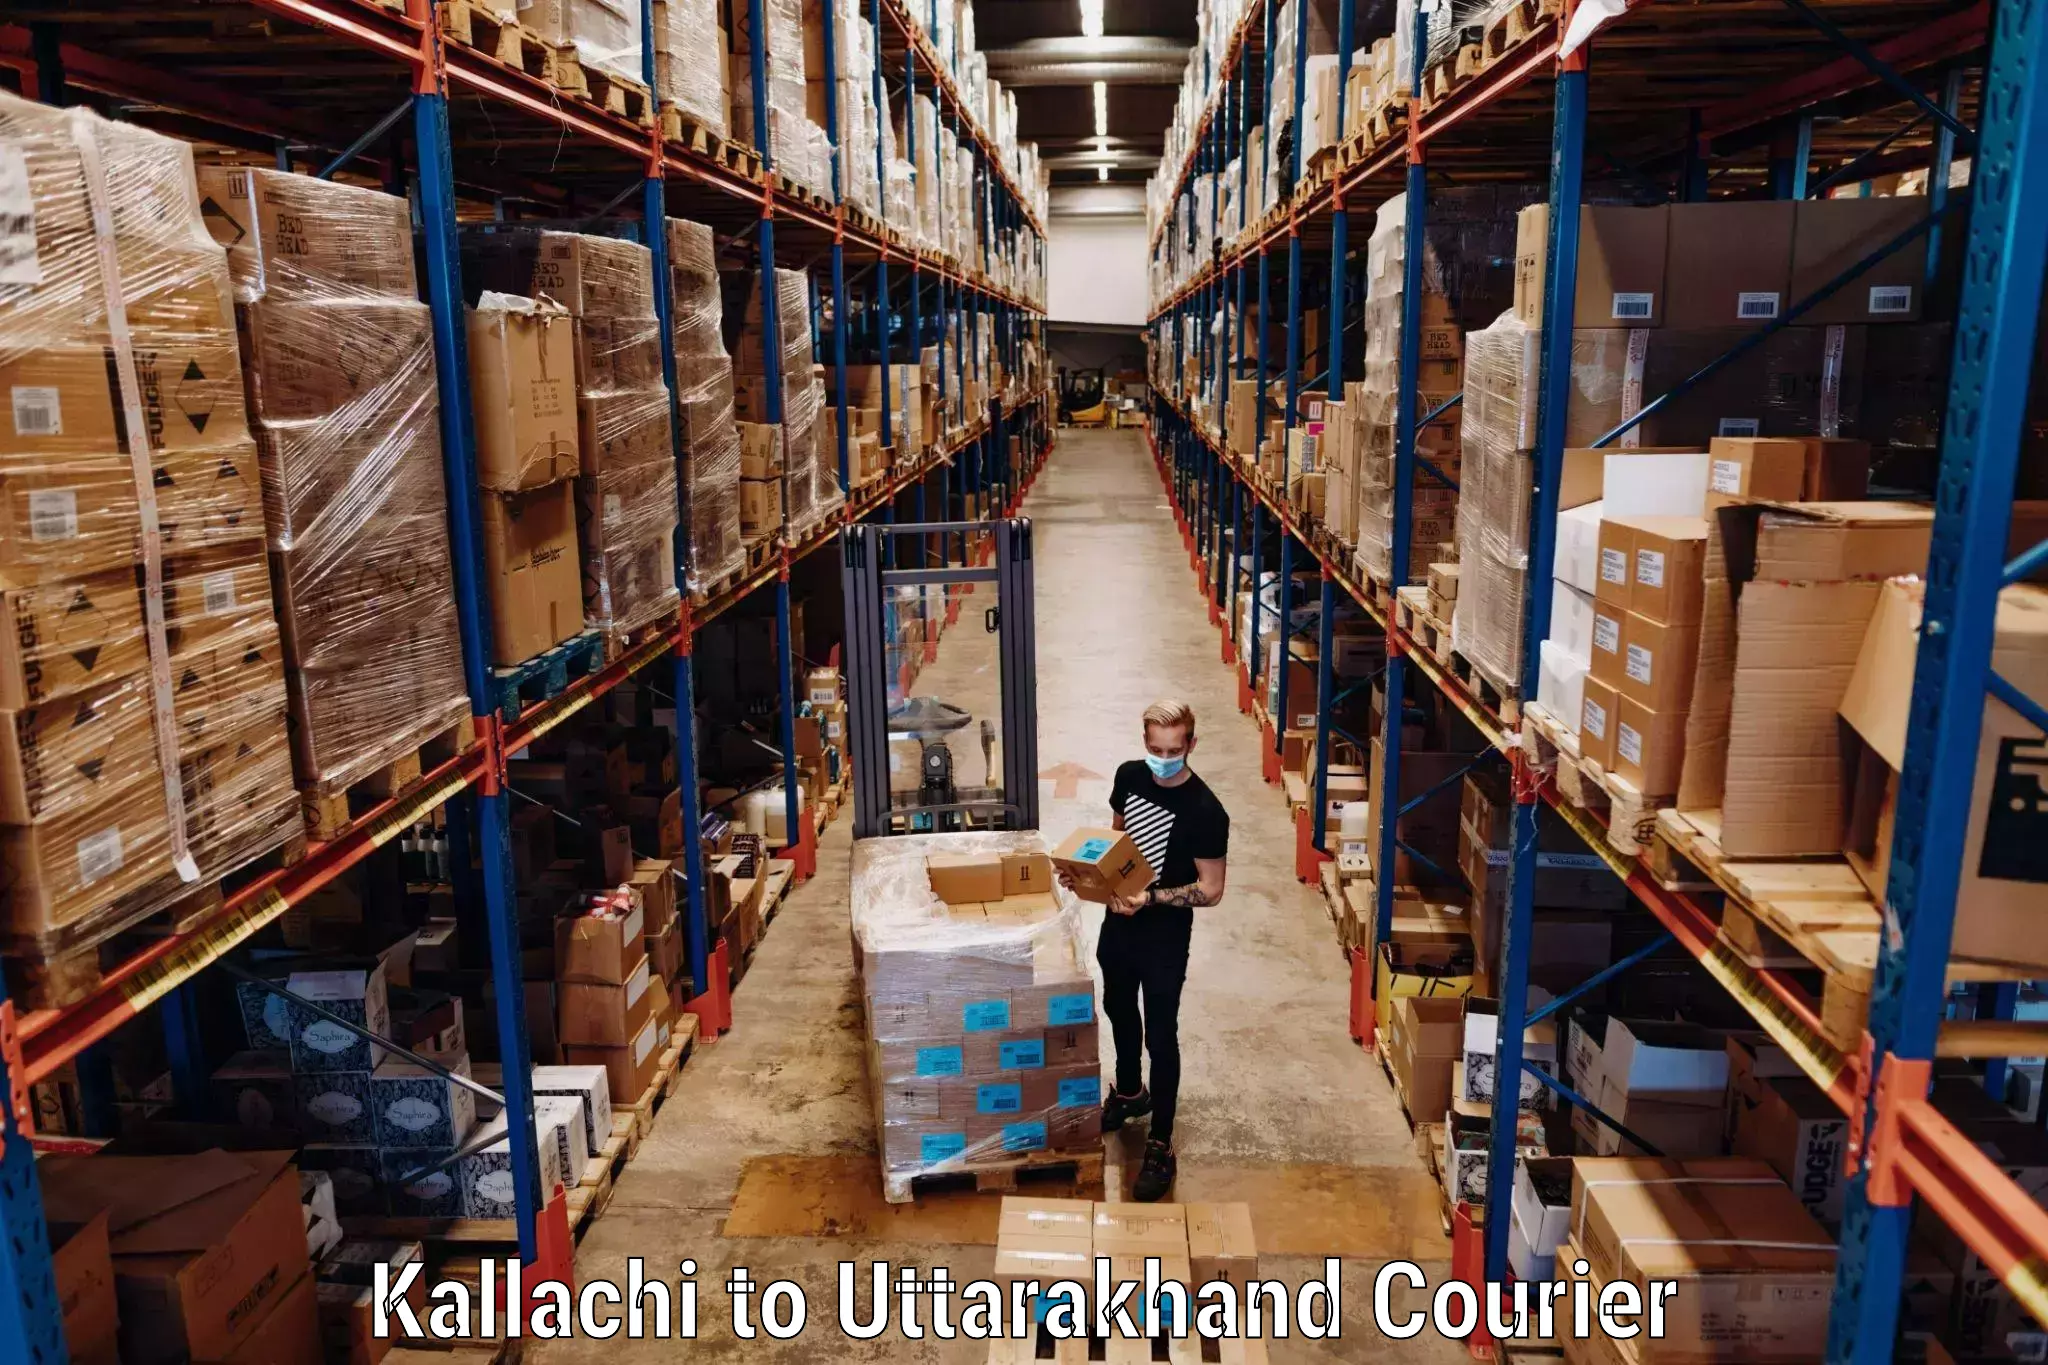 Luggage transport company Kallachi to Uttarakhand